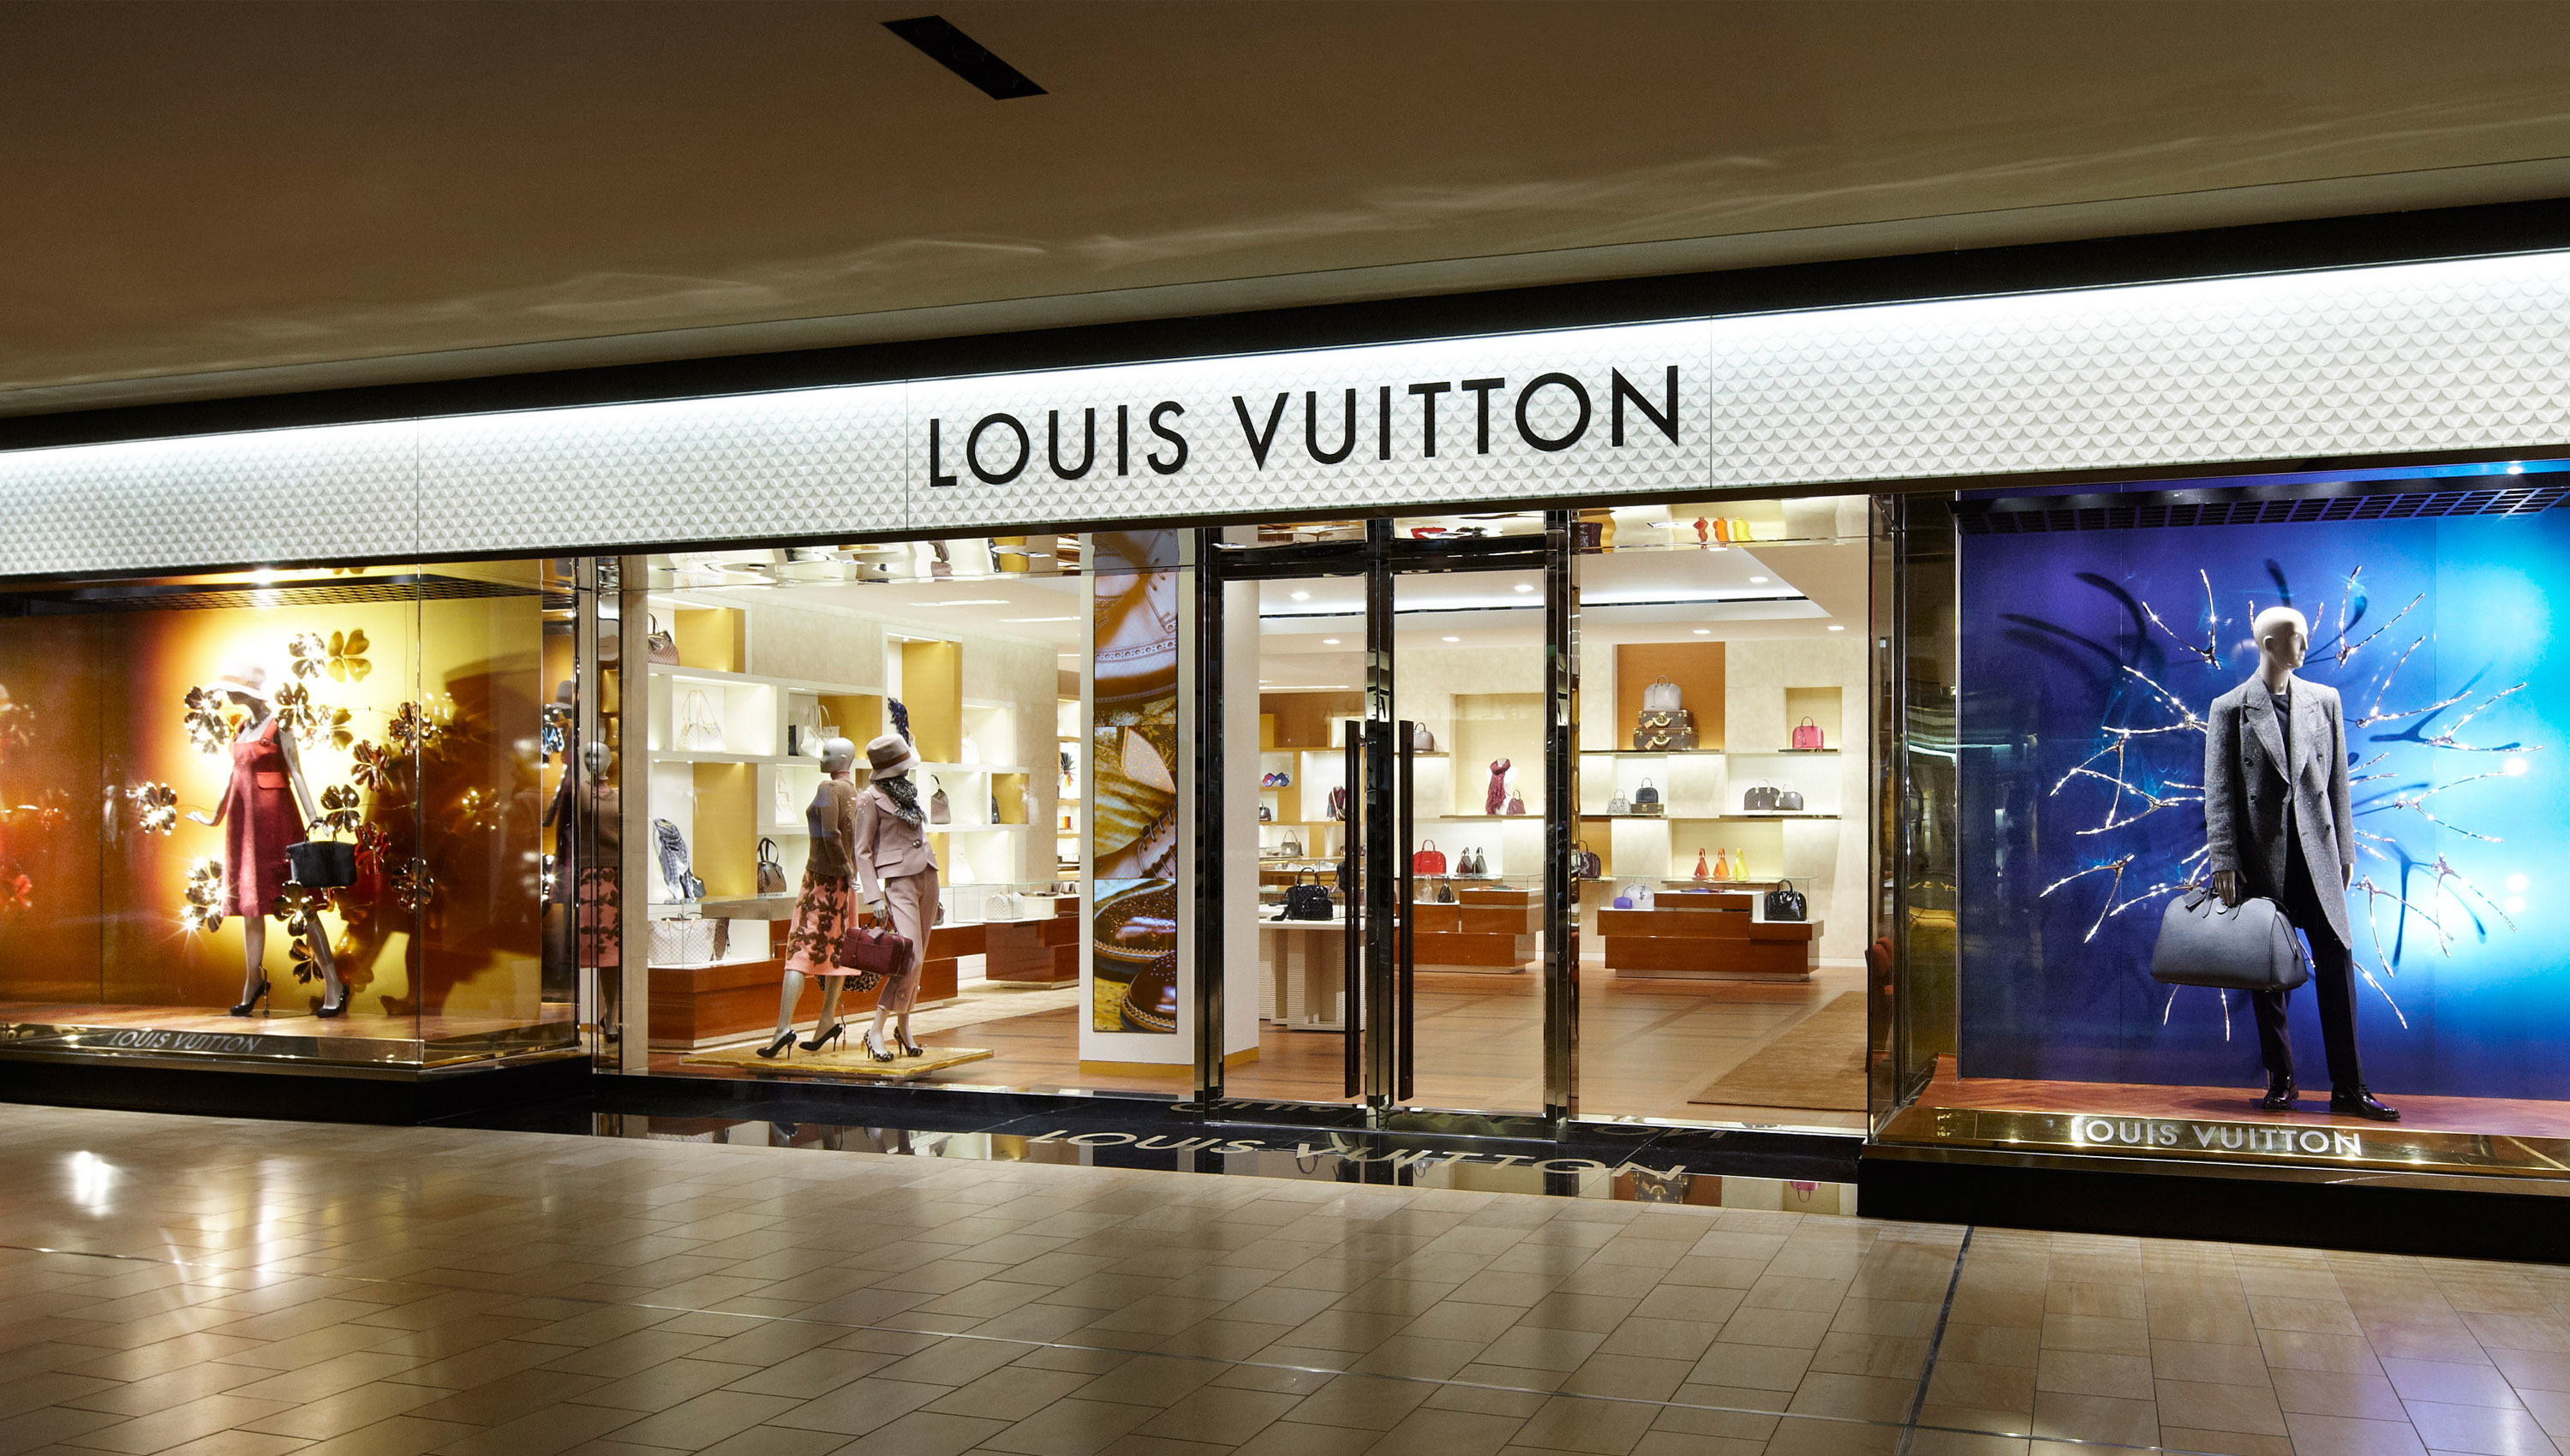 Louis Vuitton Houston Galleria, Houston Texas (TX) - www.waterandnature.org